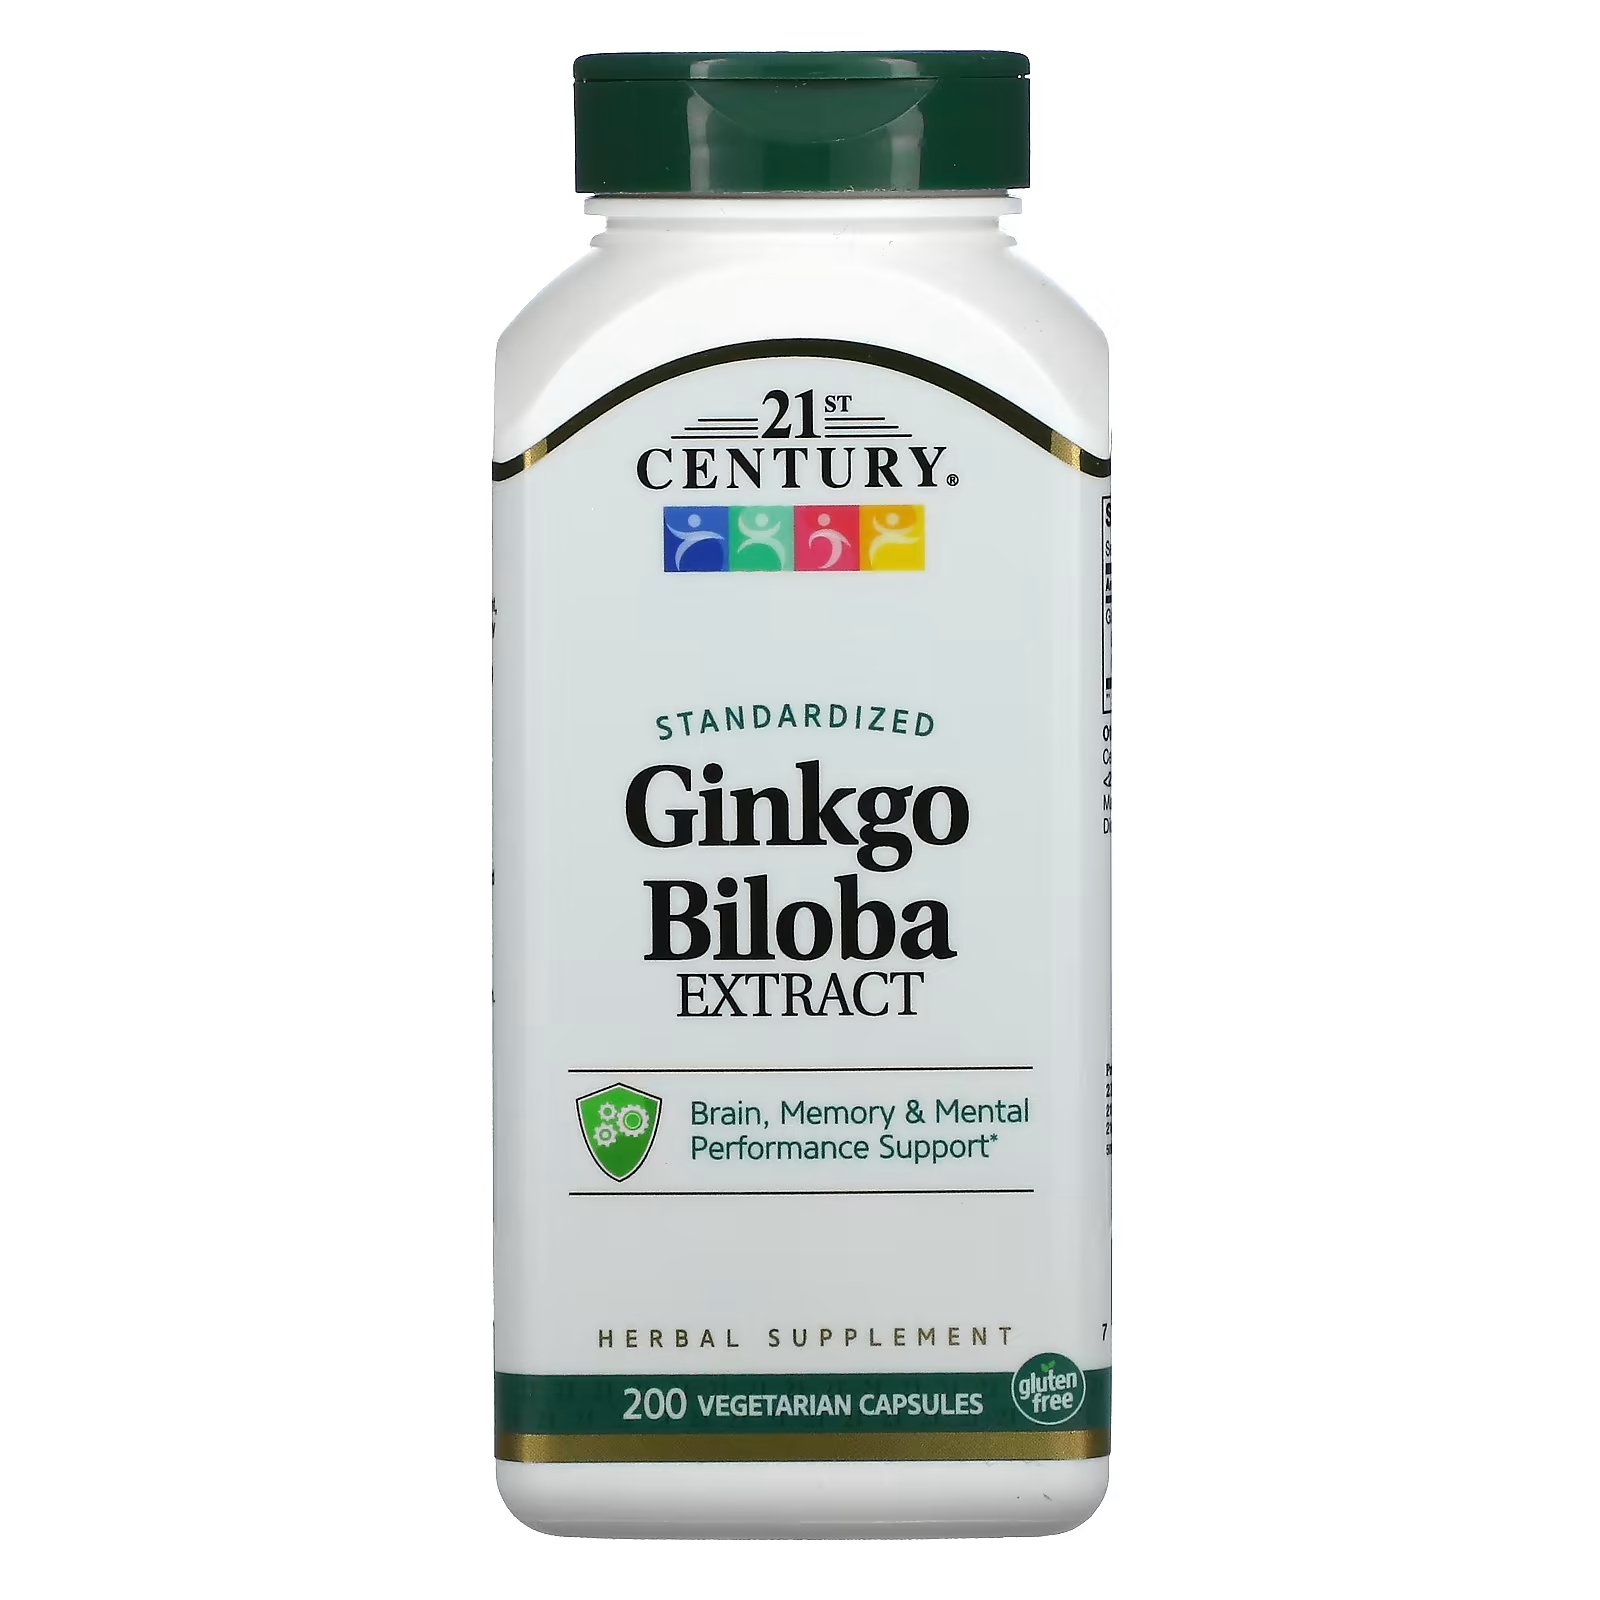 21st Century Экстракт Ginkgo biloba стандартизированный, 200 вегетарианских капсул экстракт виноградных косточек 200 капсул 21st century